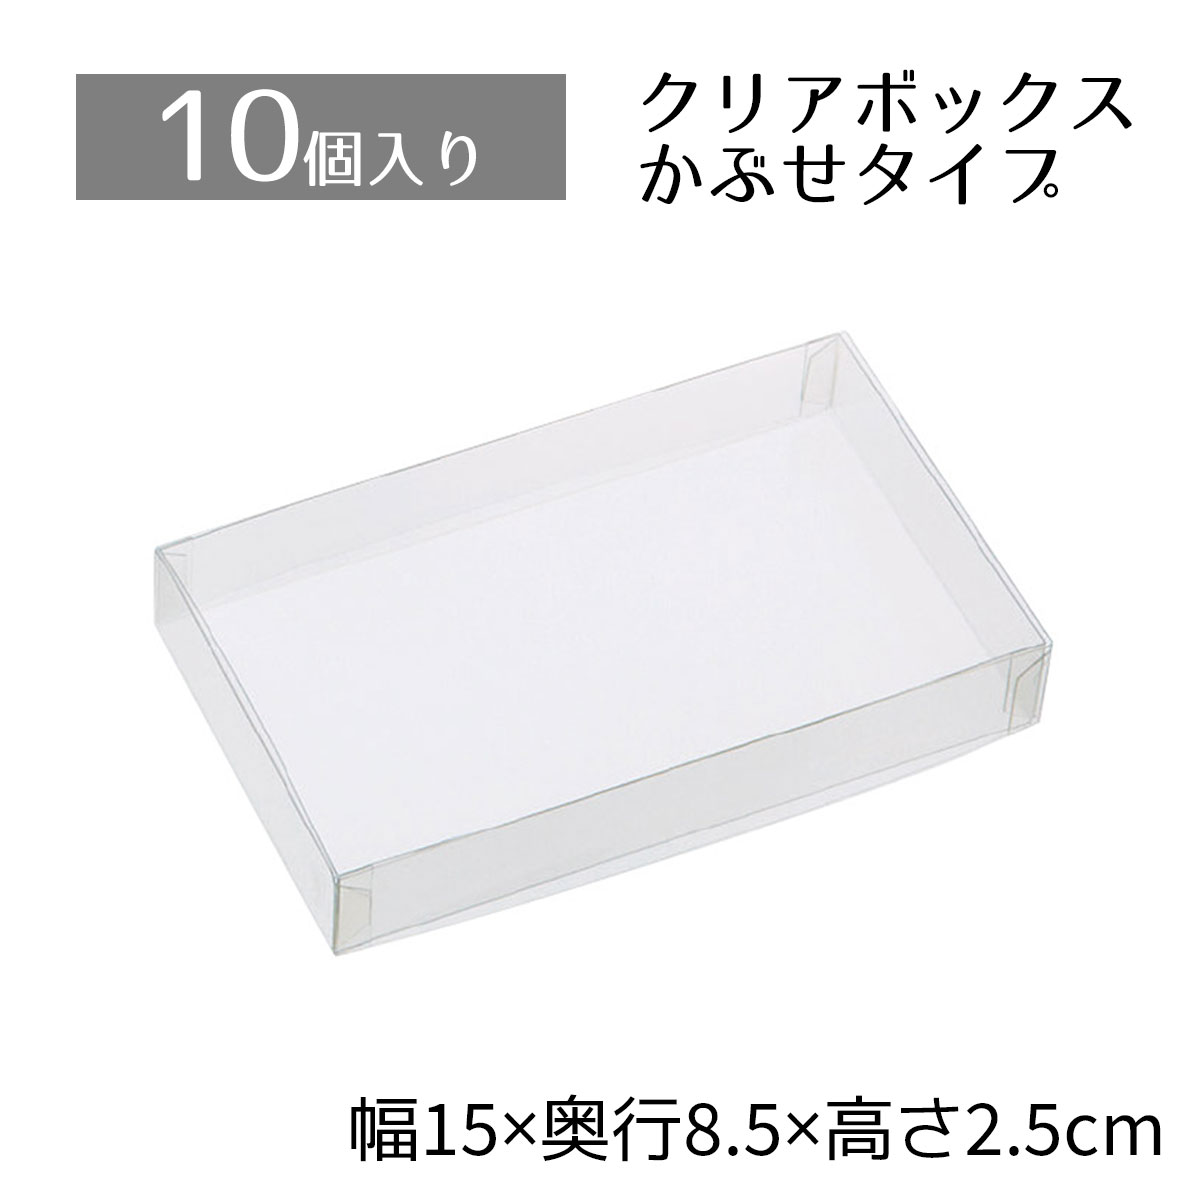 【楽天市場】【10個入り】クリアボックス 8.5×8.5×2.5cm中身が 